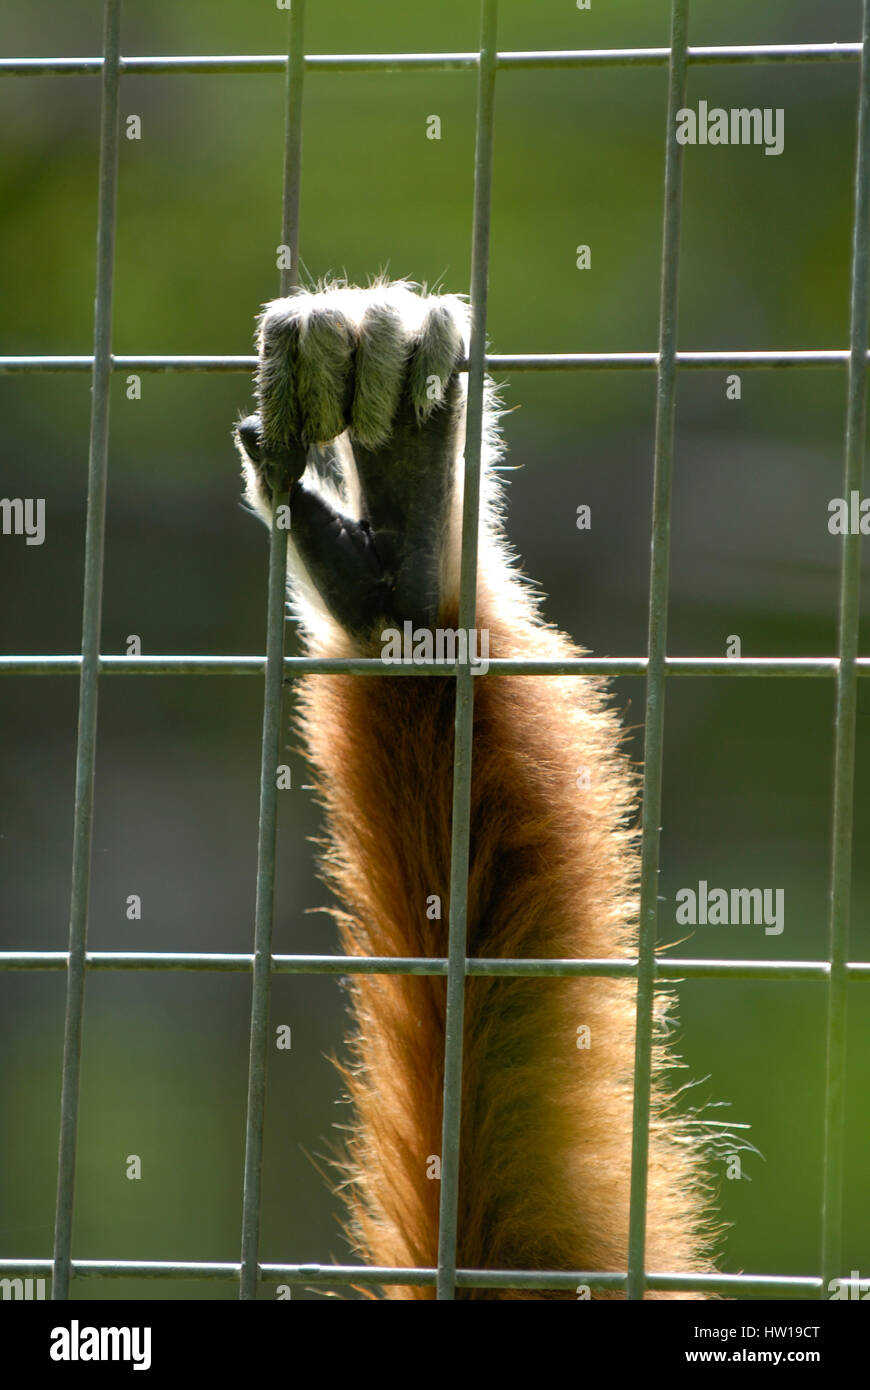 Animals behind grids, Tiere hinter Gittern Stock Photo